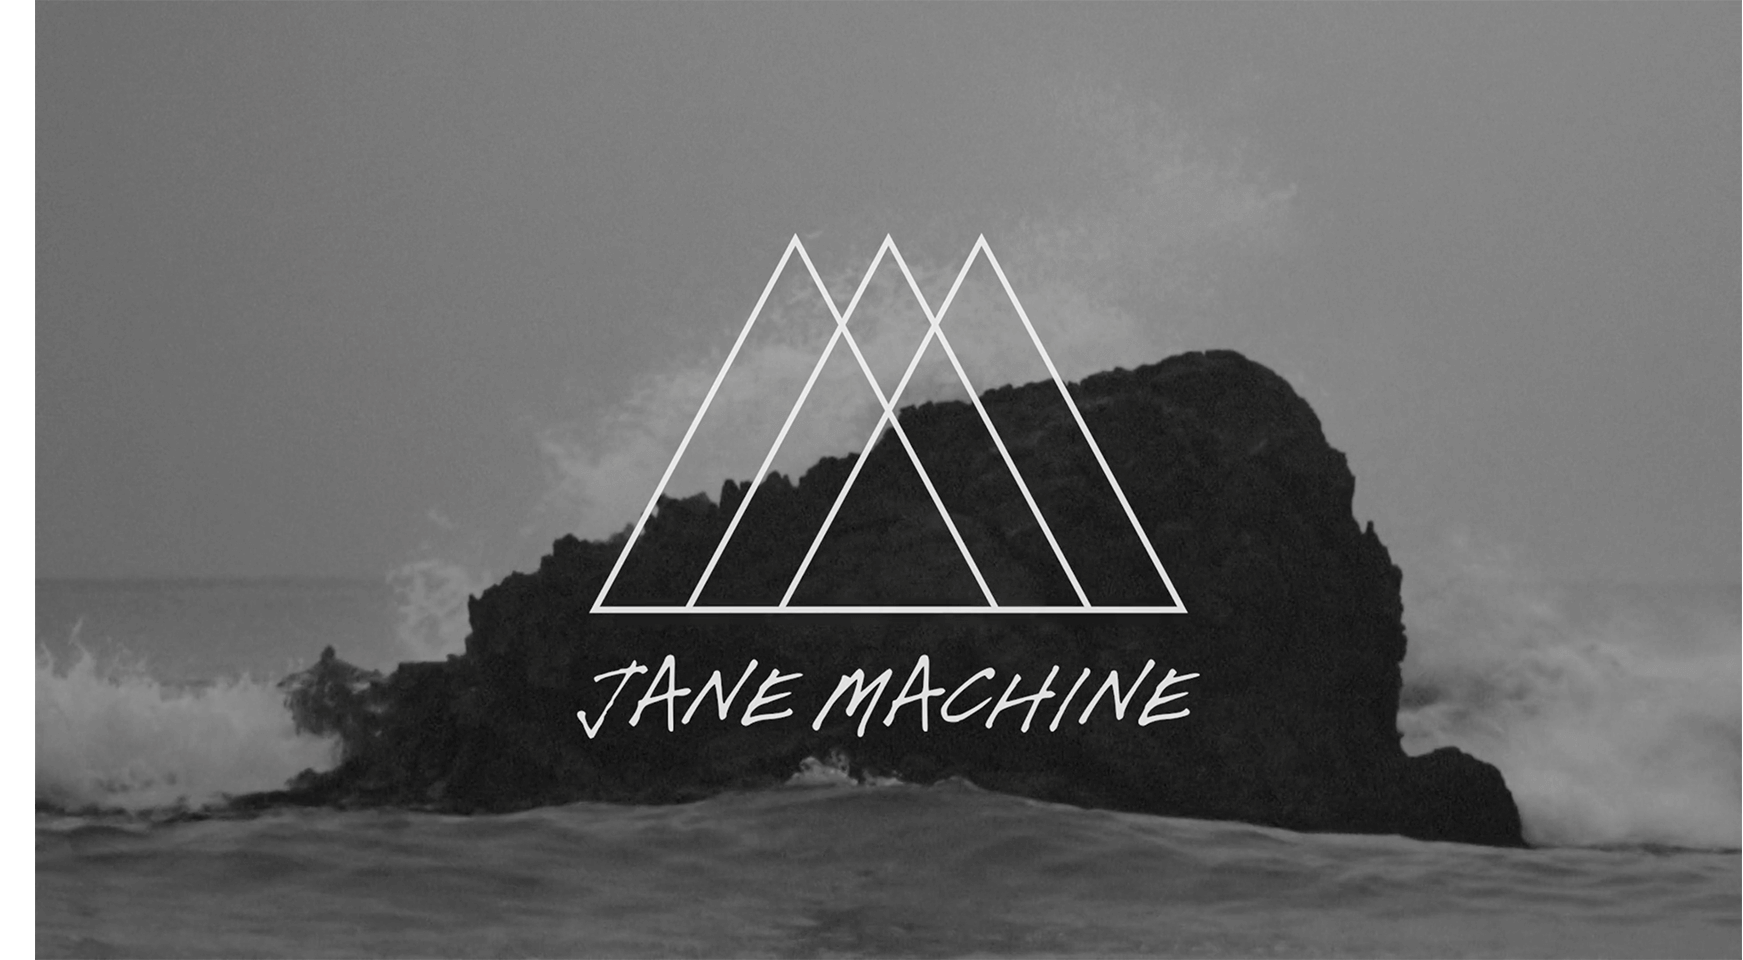 jane_machine_1